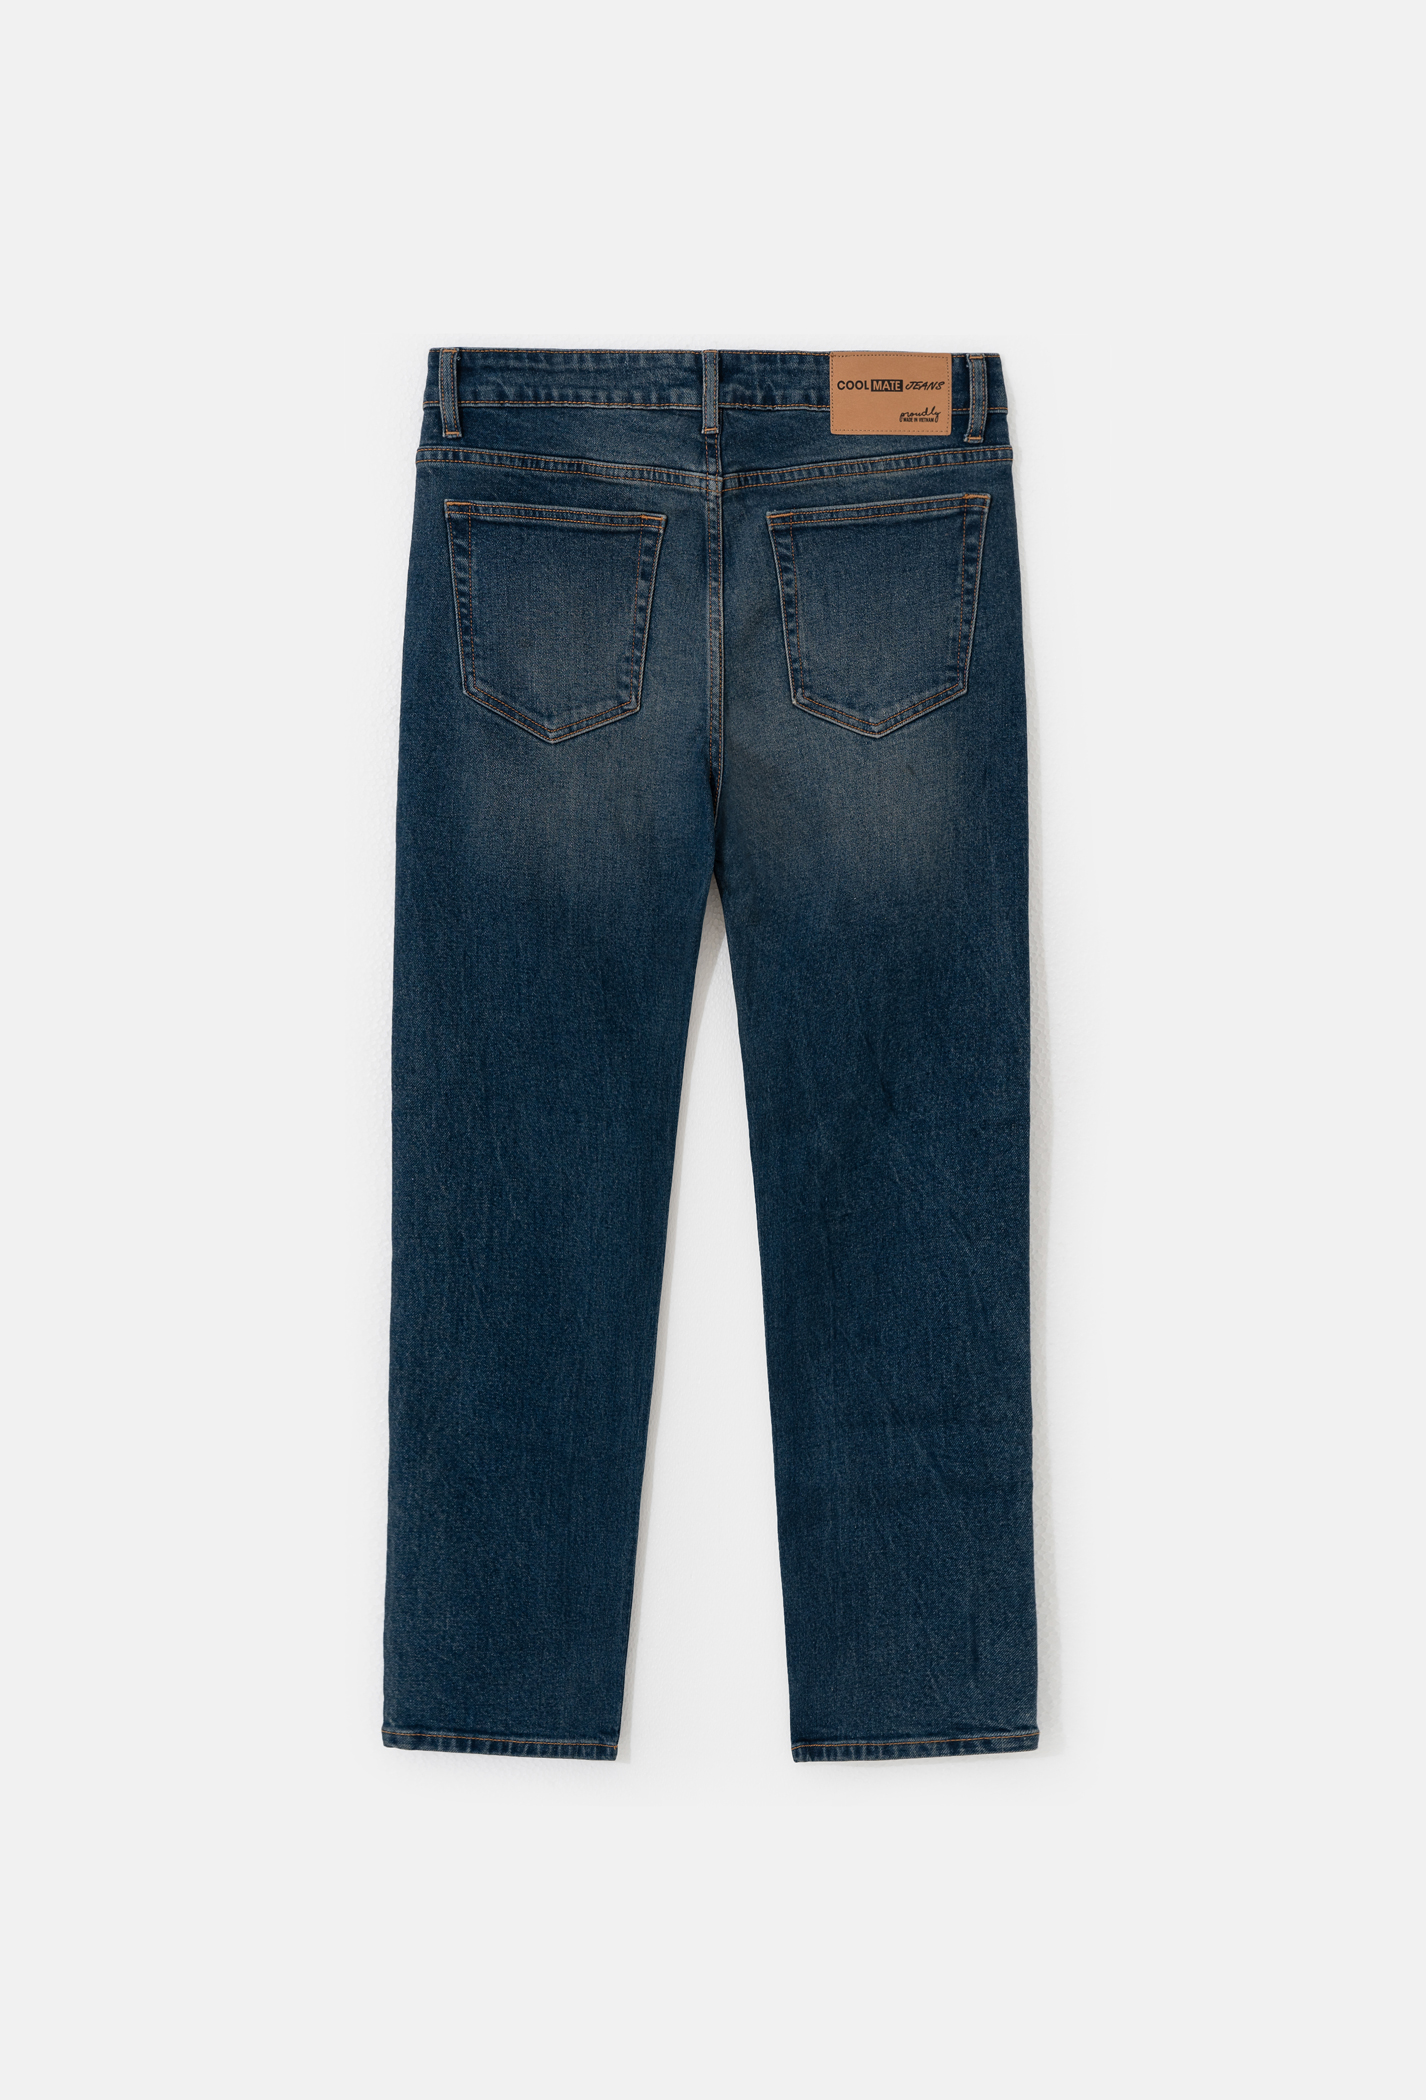 Quần Jeans Basic Regular Xanh đậm 2